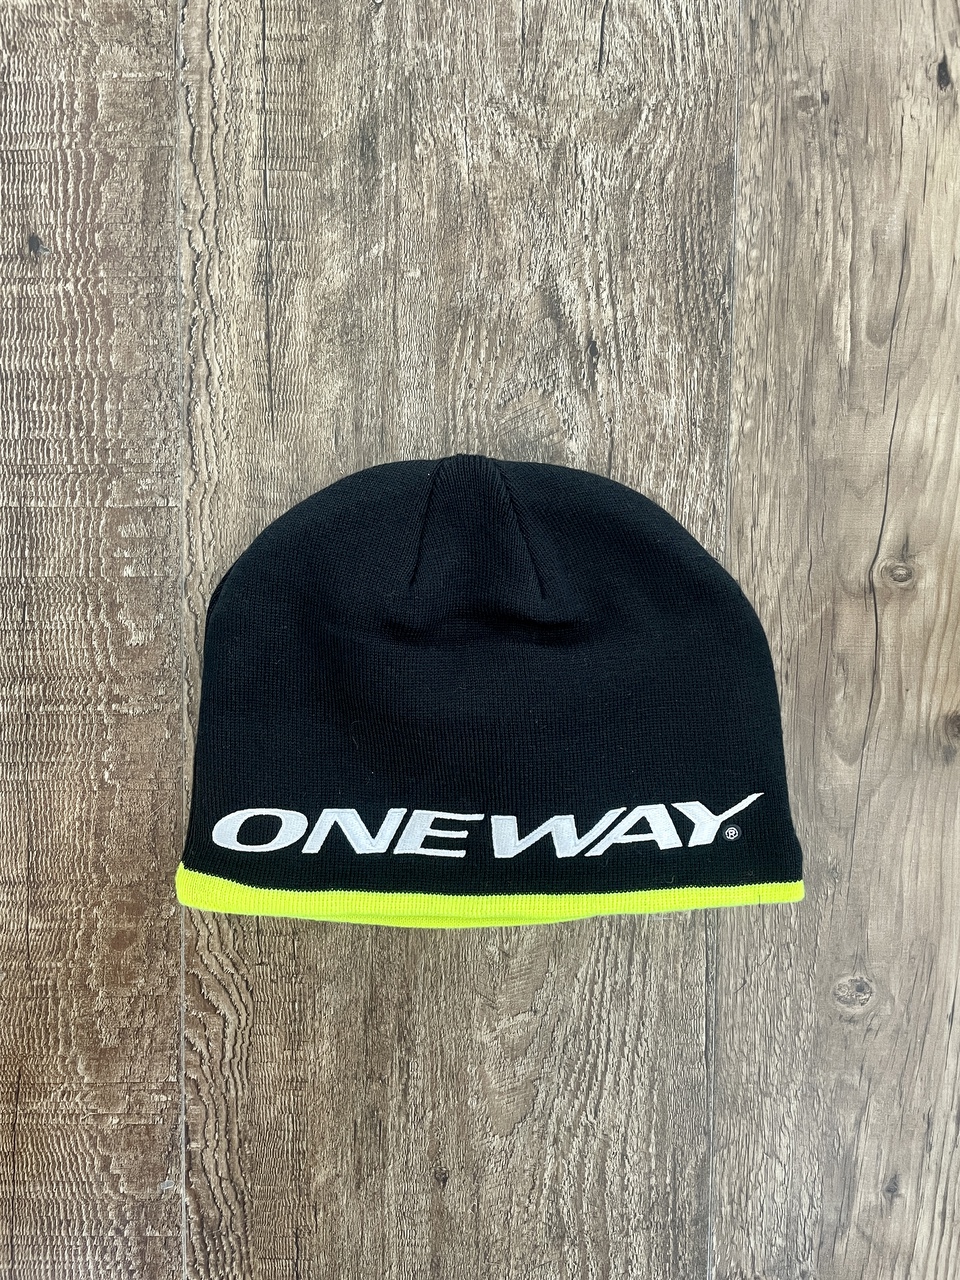 One Way - Hat/Beanie/Mütze - black/neon yellow